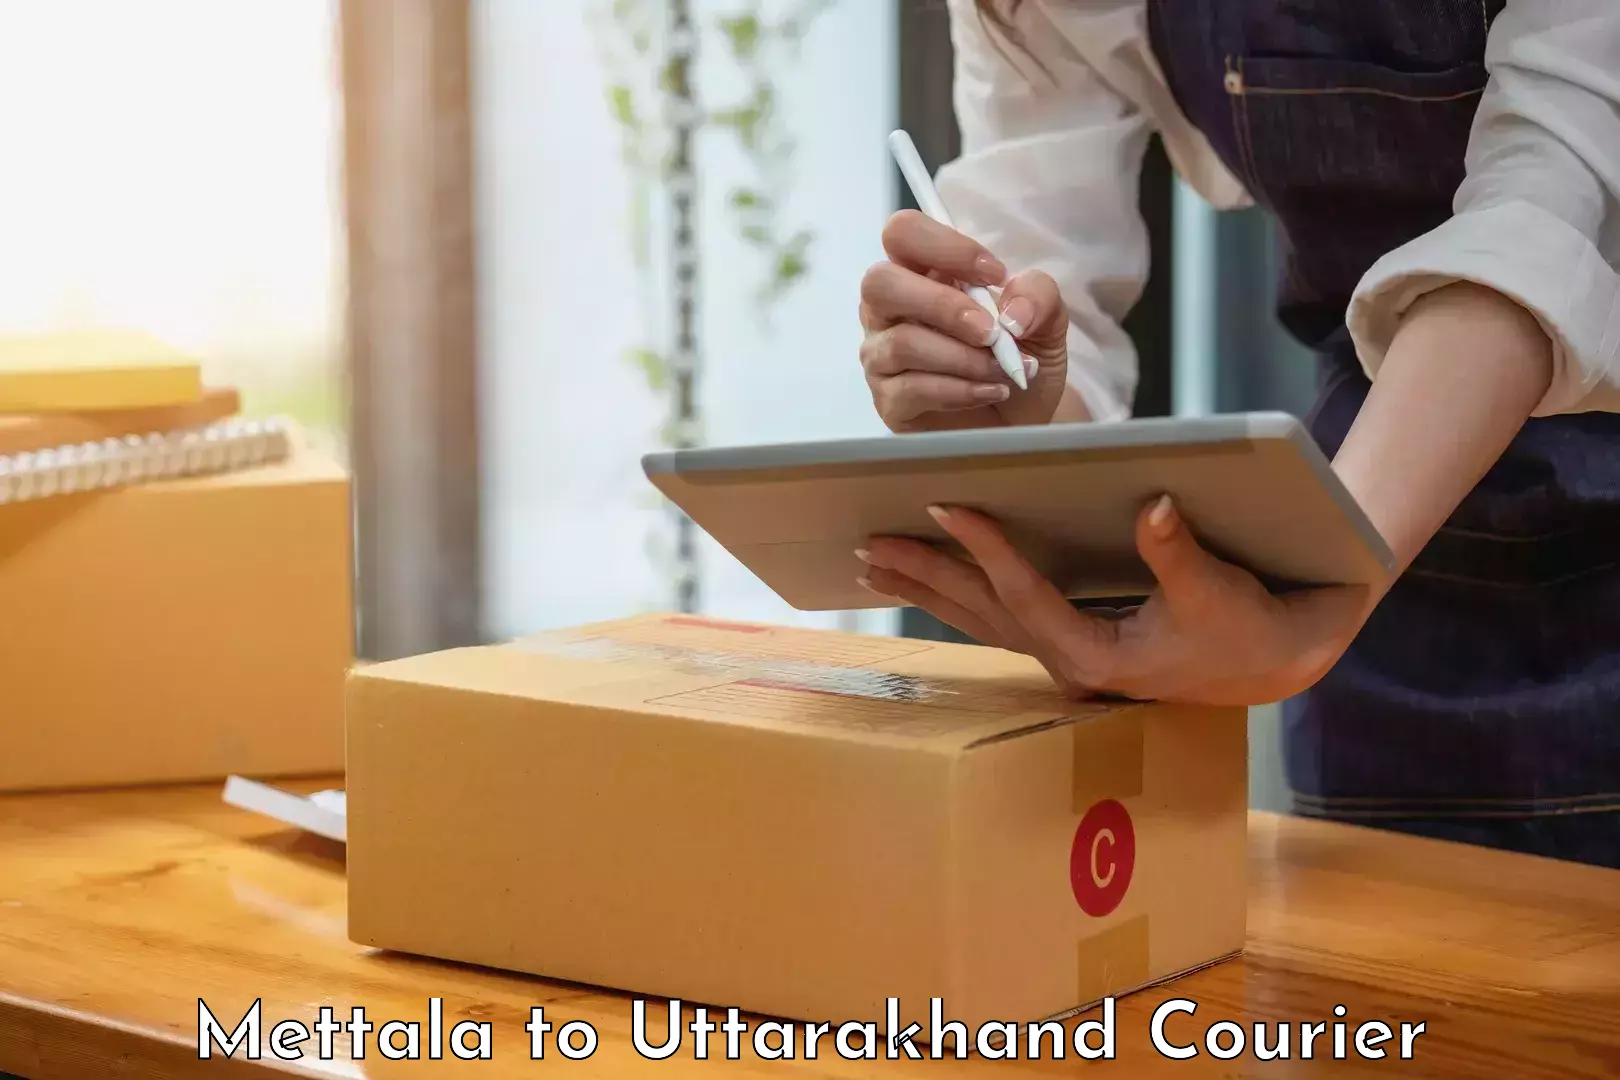 Bulk courier orders Mettala to Uttarakhand